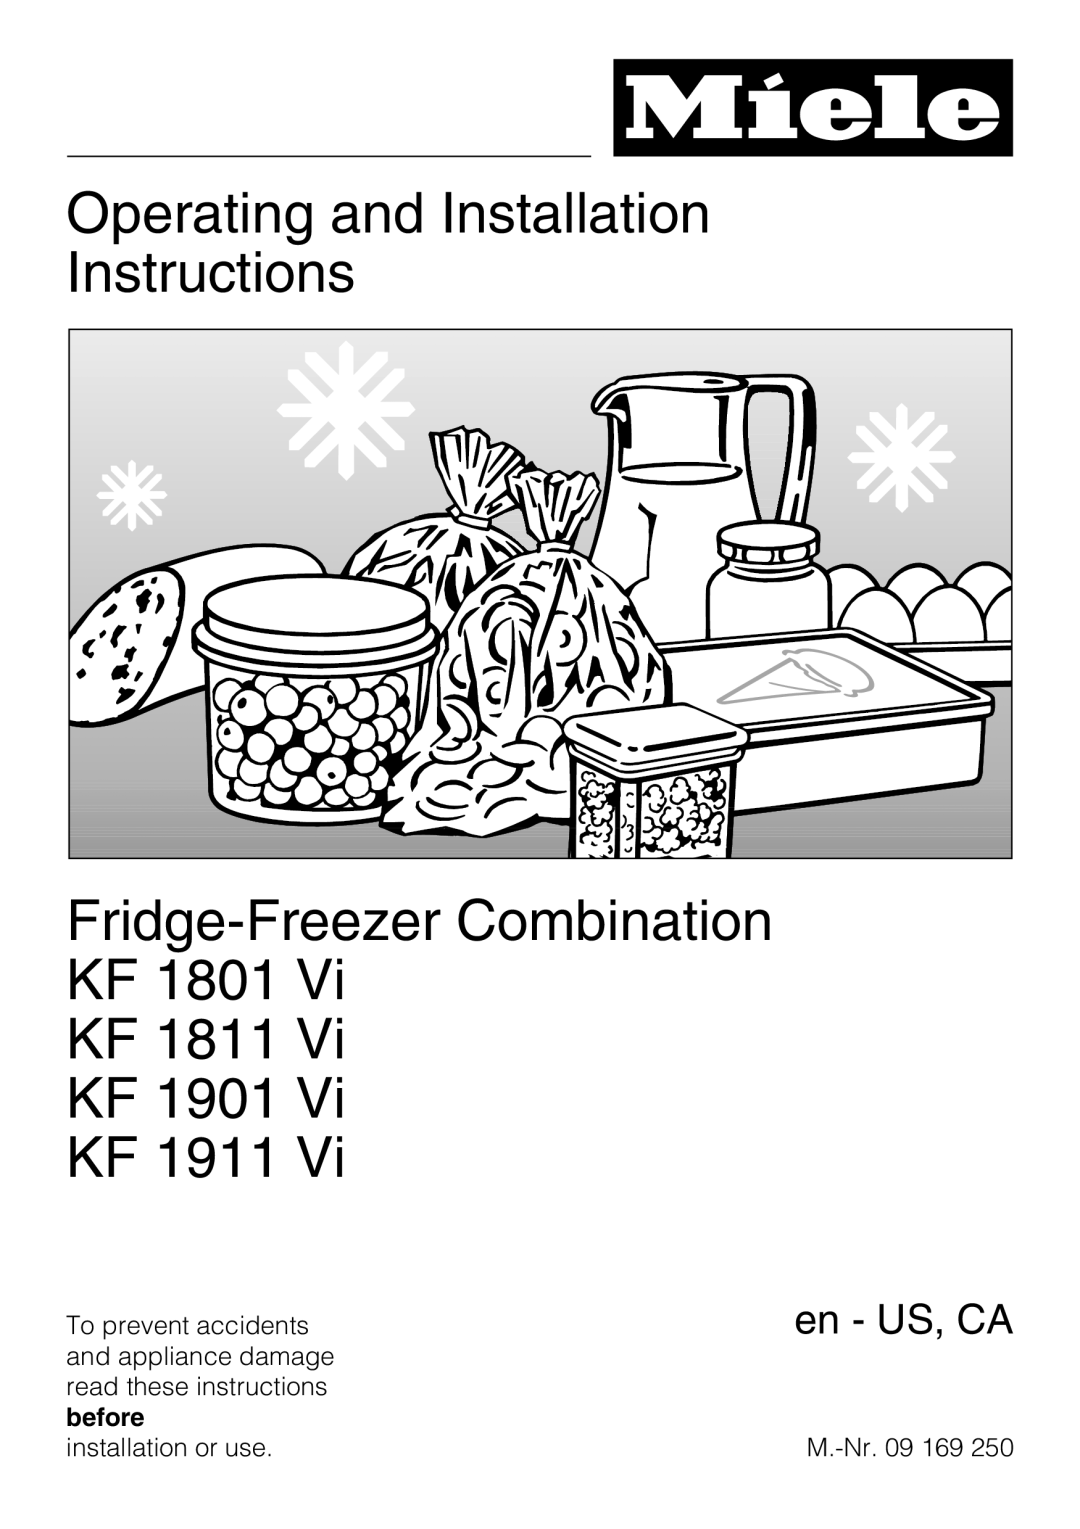 Miele KF 1801 Vi installation instructions Operating and Installation Instructions Fridge-Freezer Combination, en - US, CA 